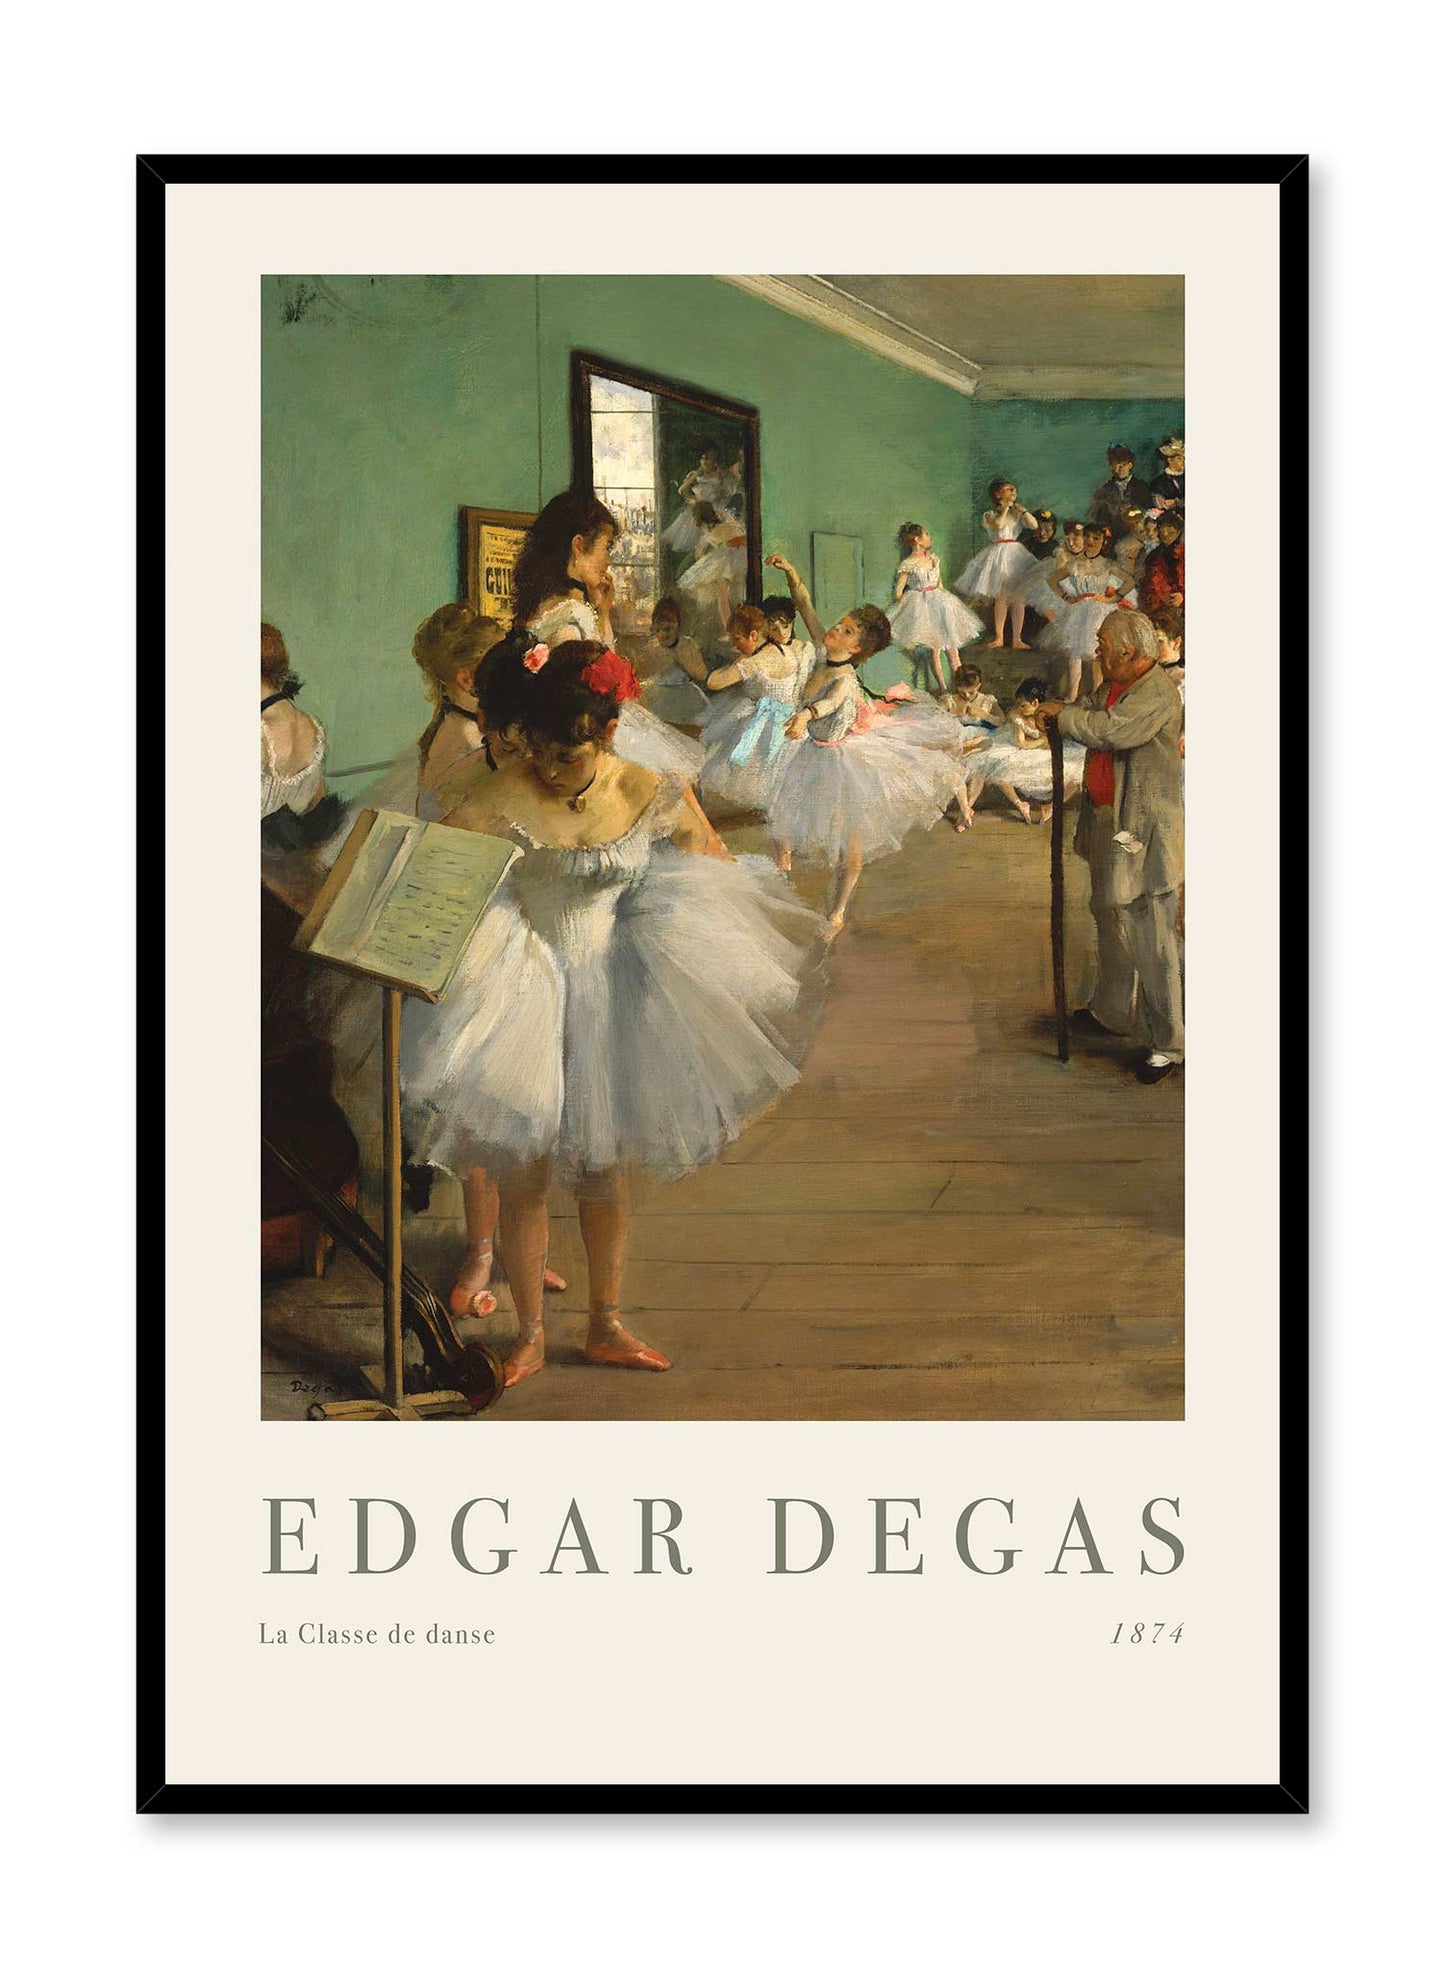 The Ballet Class is a minimalist artwork by Opposite Wall of Edgar Degas' La Classe de danse from 1874.